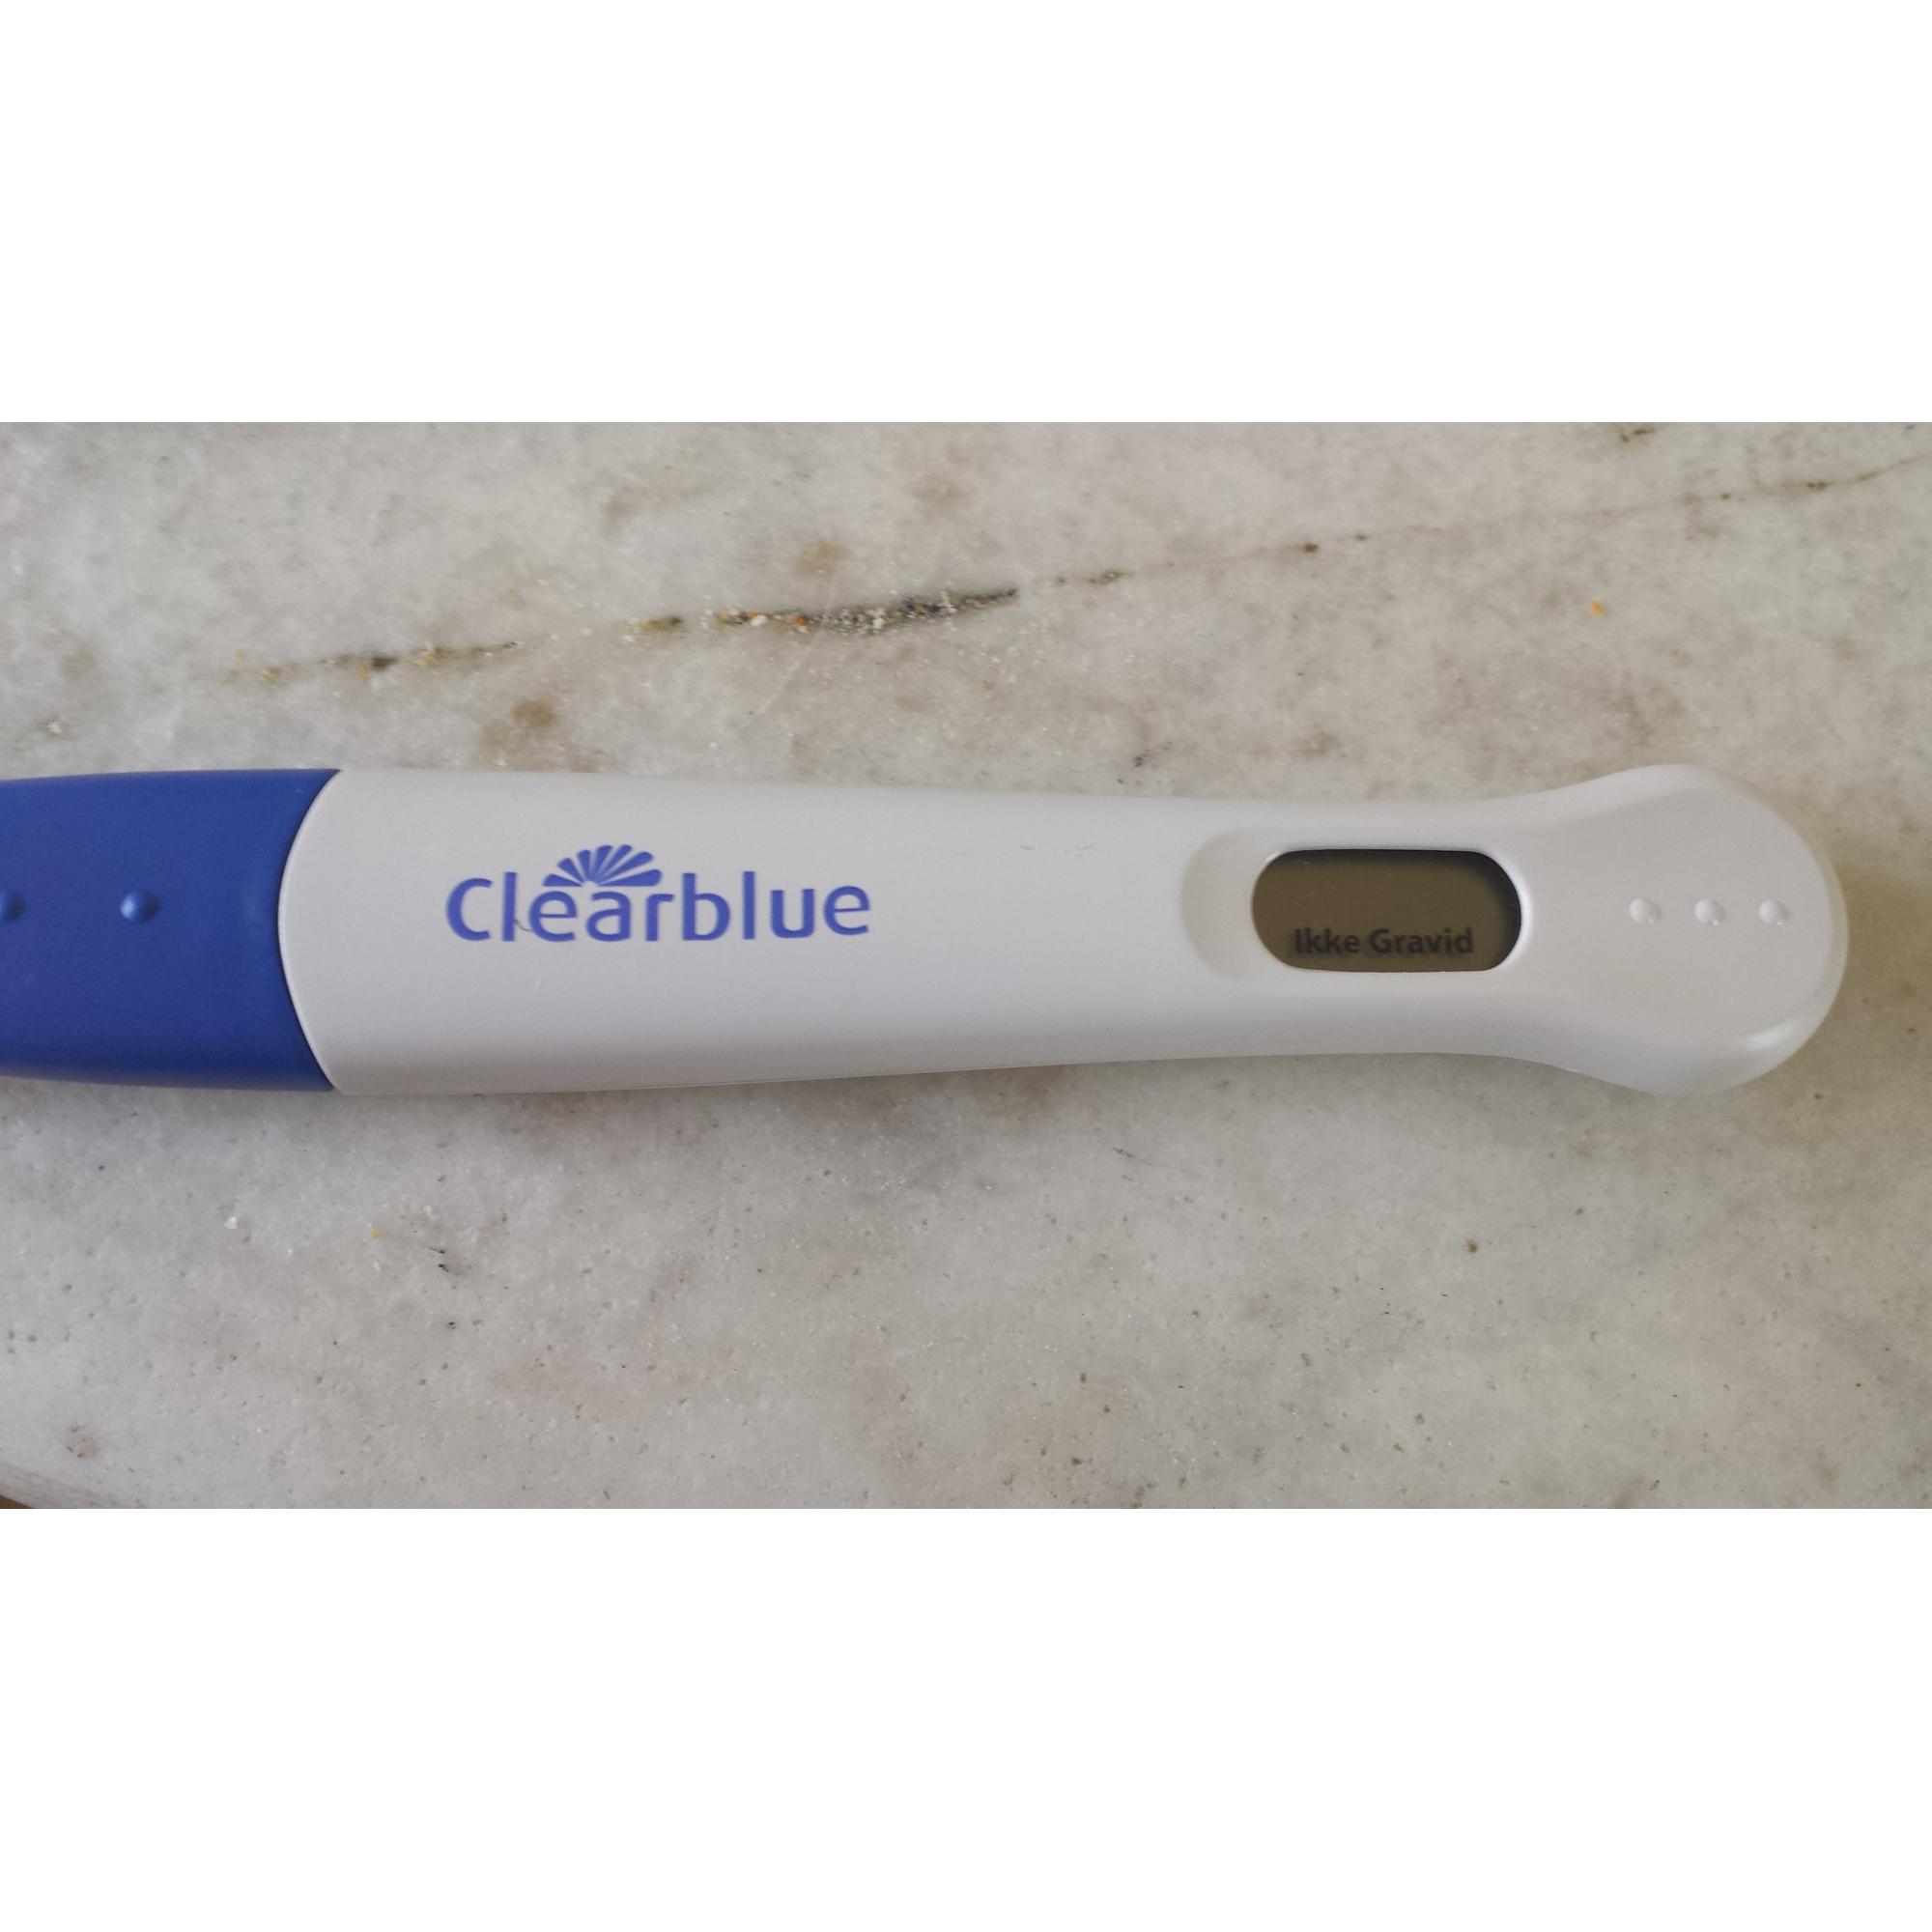 Positiv fra netto men clearblue gravid ? - Skrevet Malene